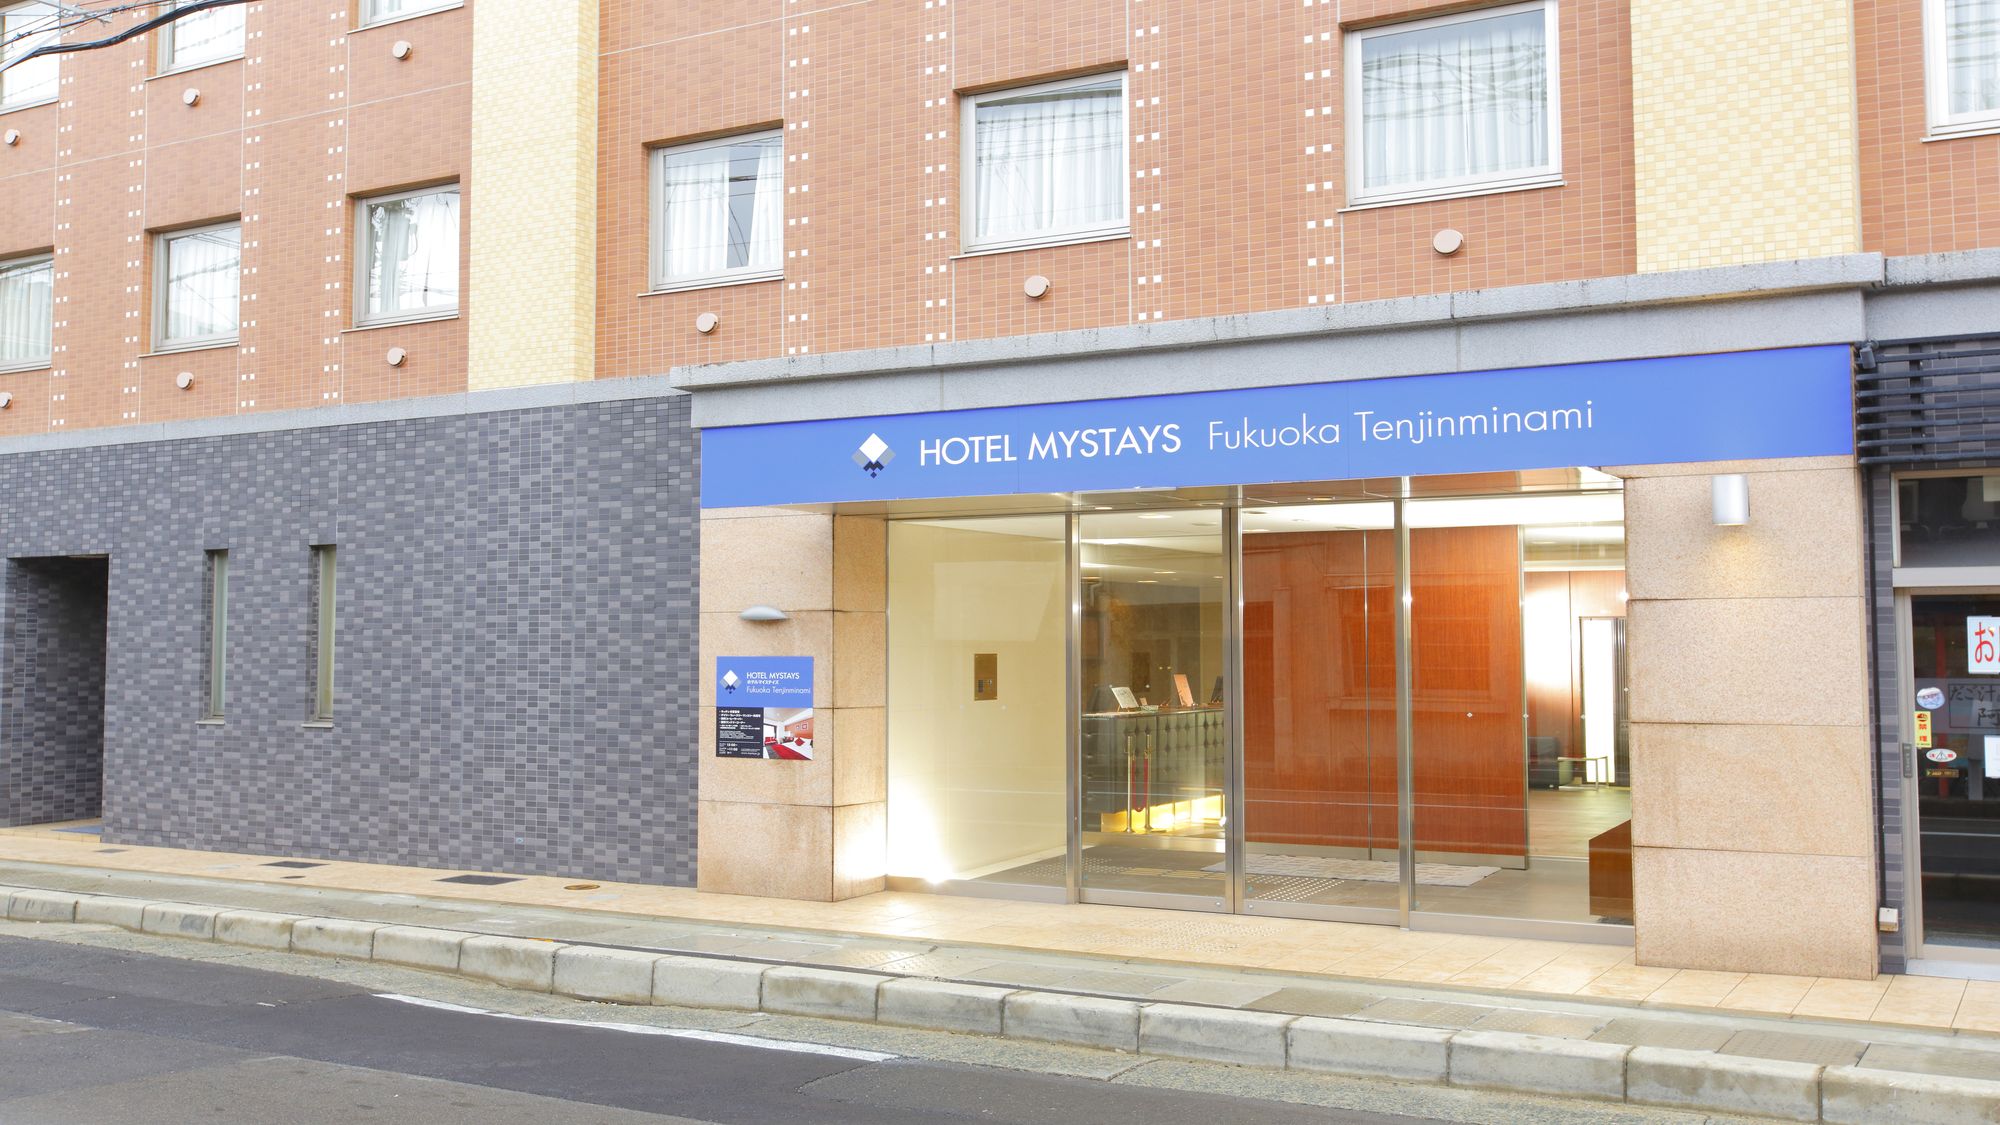 Hotel MyStays Fukuoka Tenjin Minami